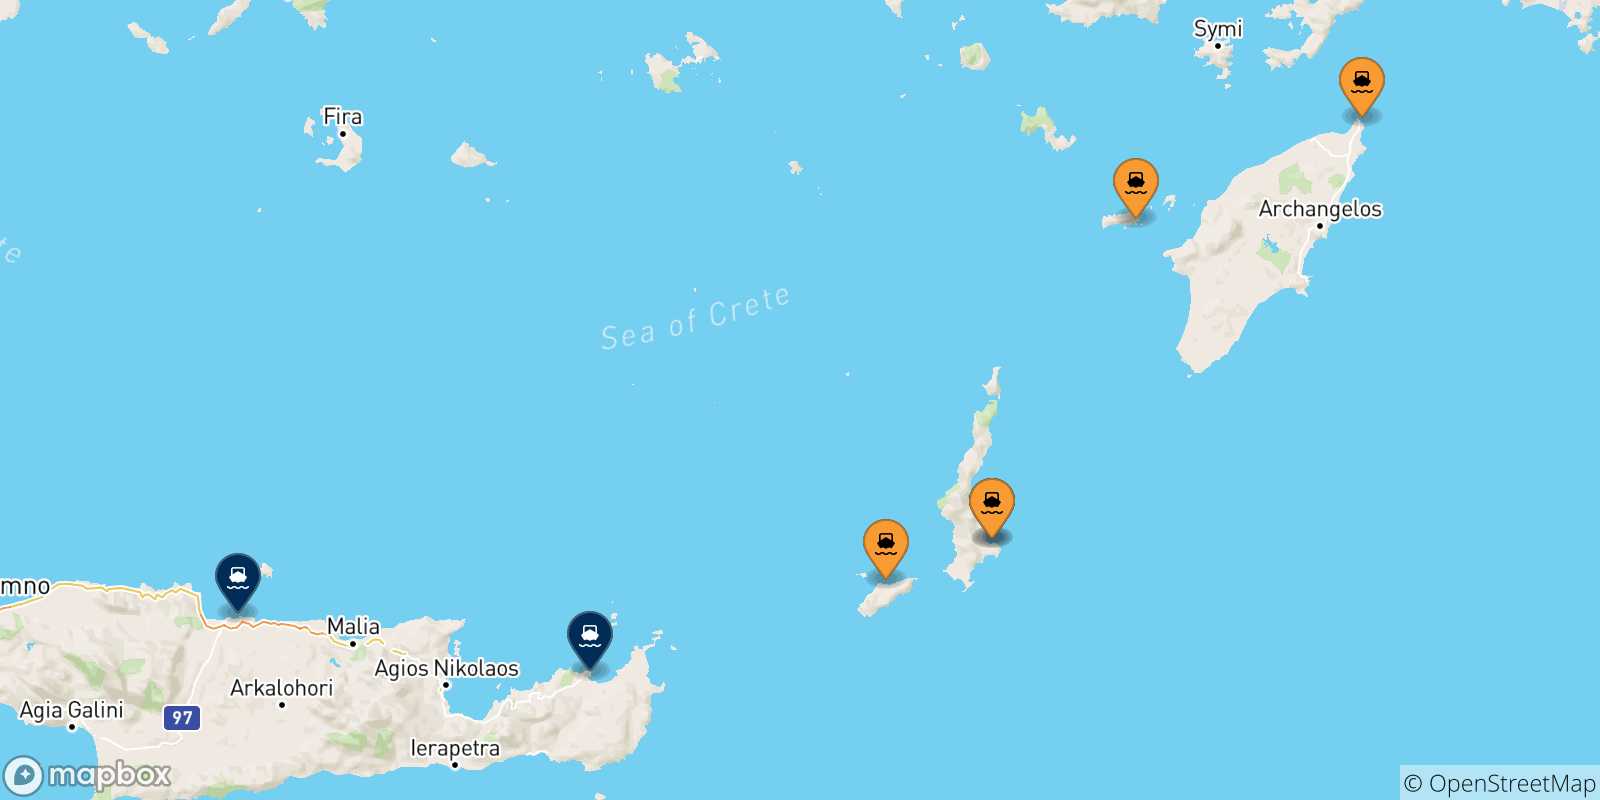 Mappa delle possibili rotte tra le Isole Dodecaneso e Creta